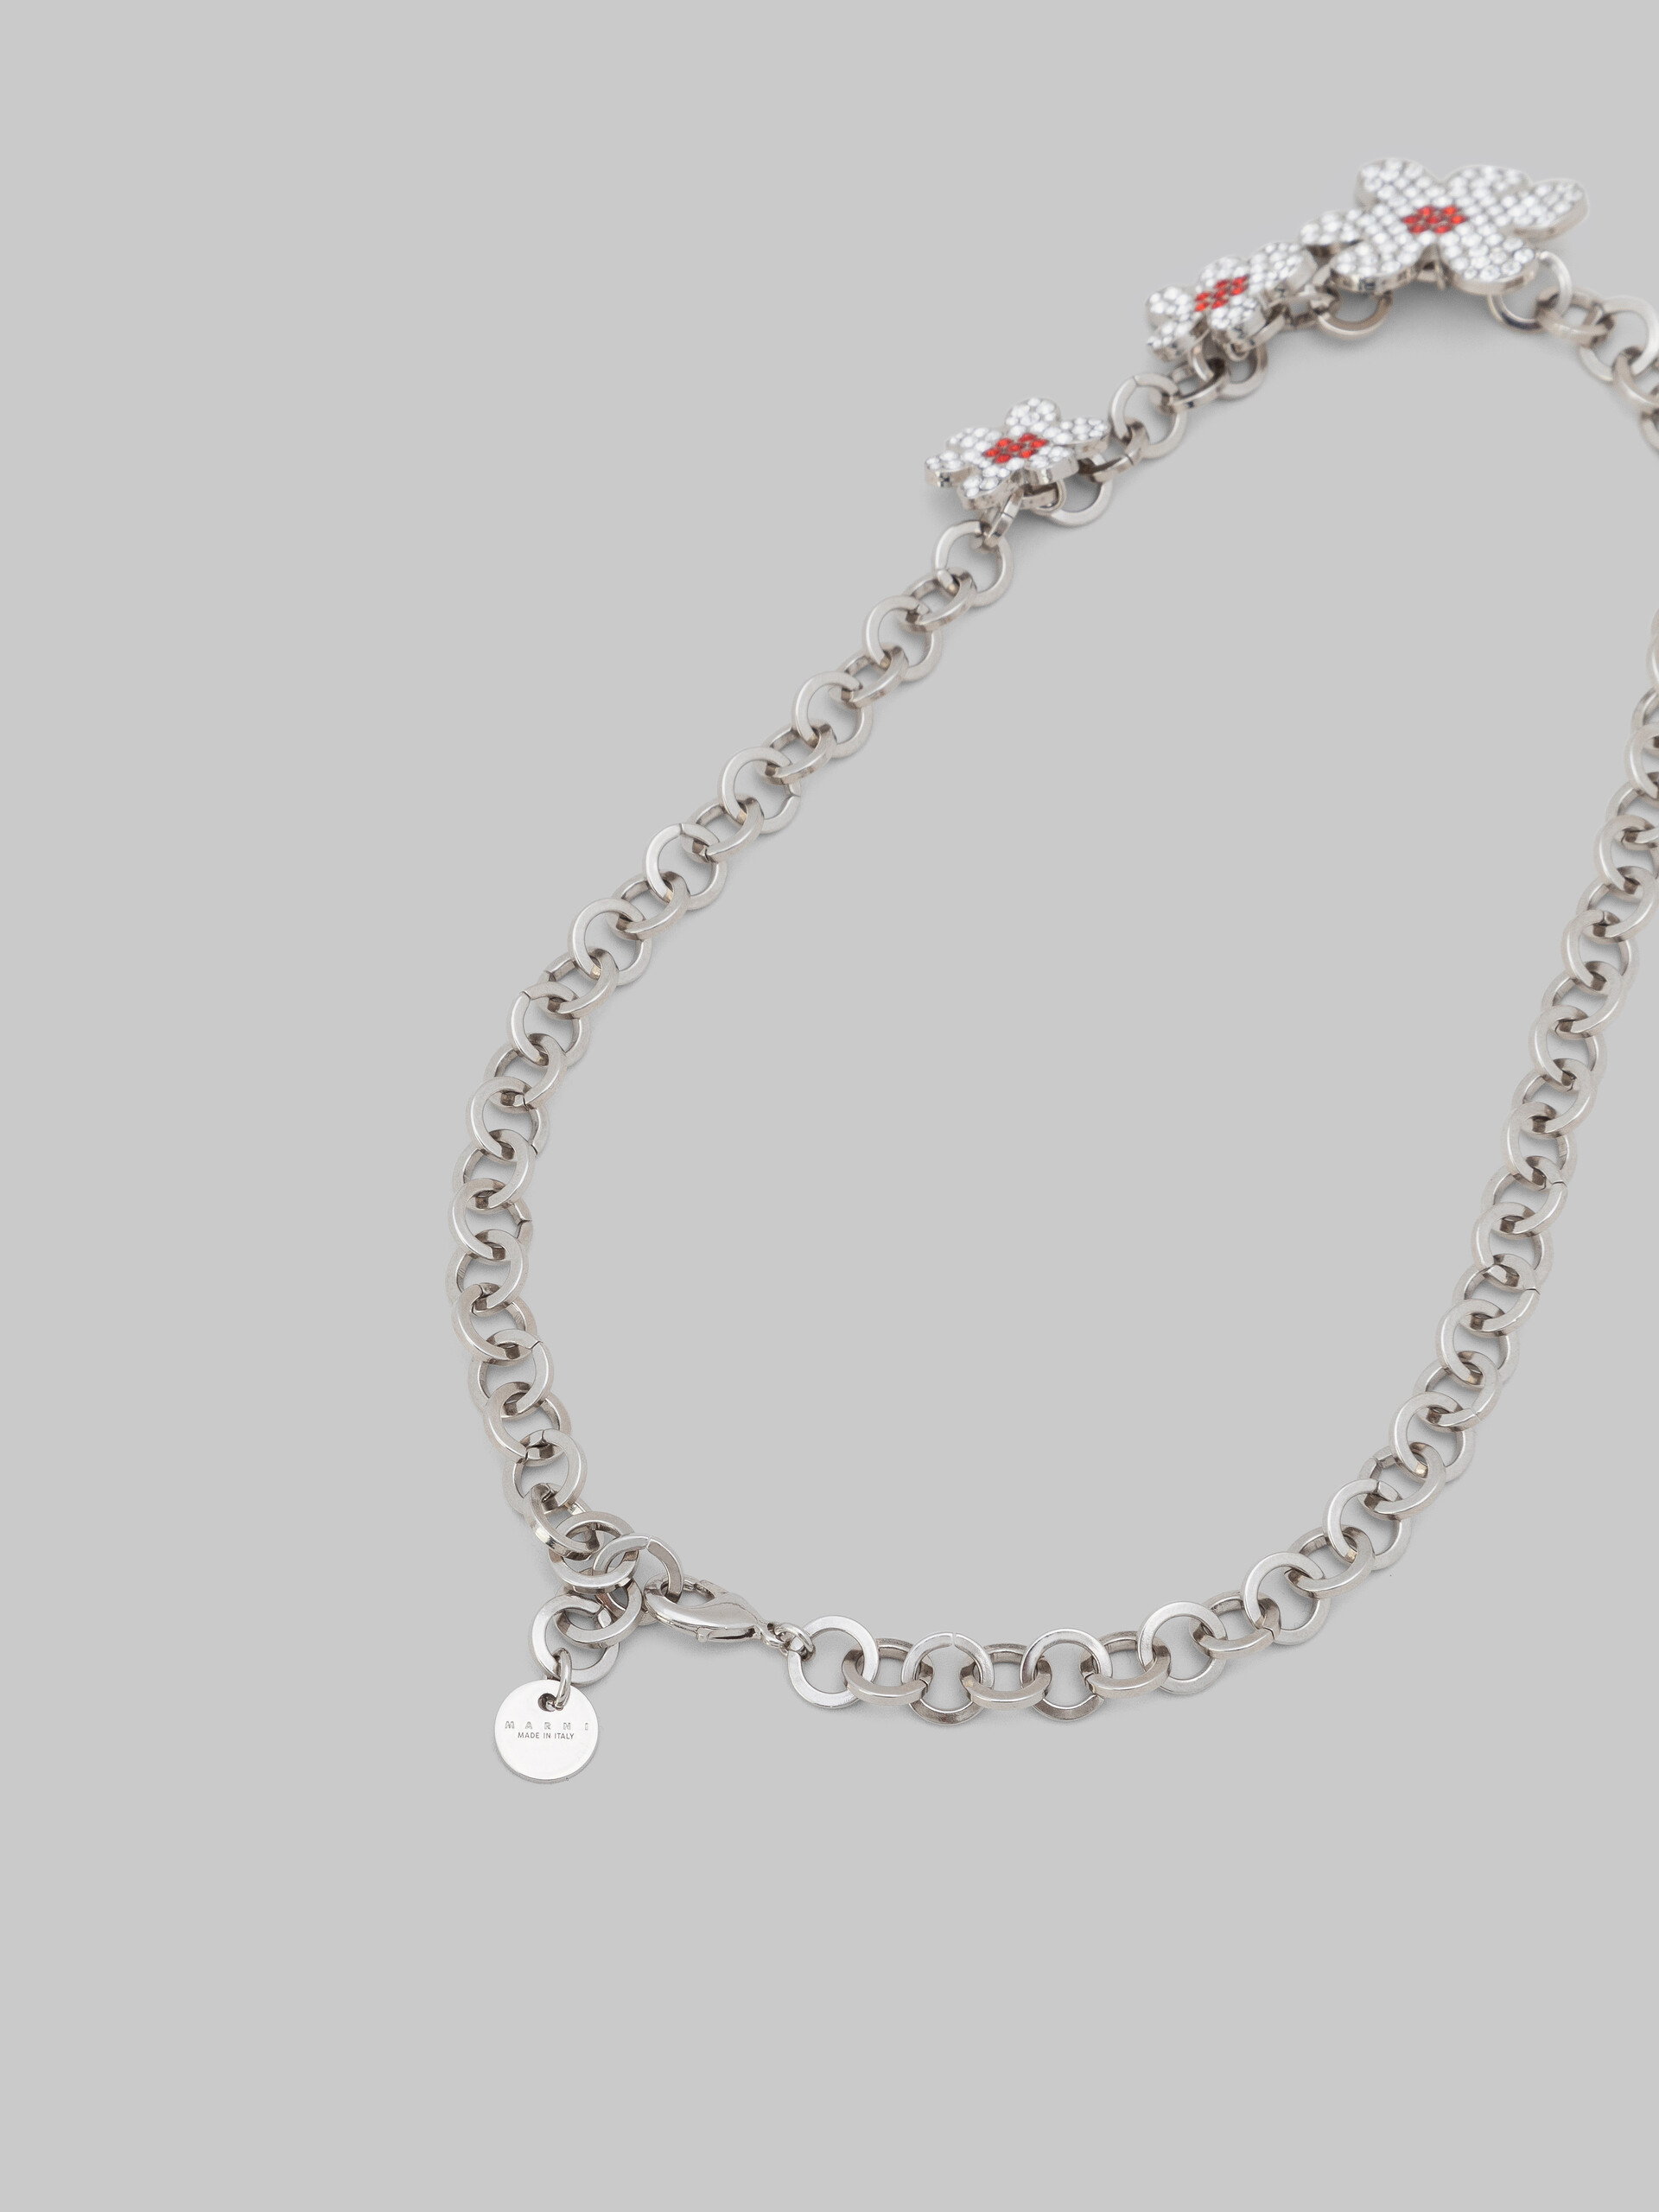 Palladiumfarbene Halskette mit runden Gliedern und Gänseblümchen-Anhängern - Halsketten - Image 4